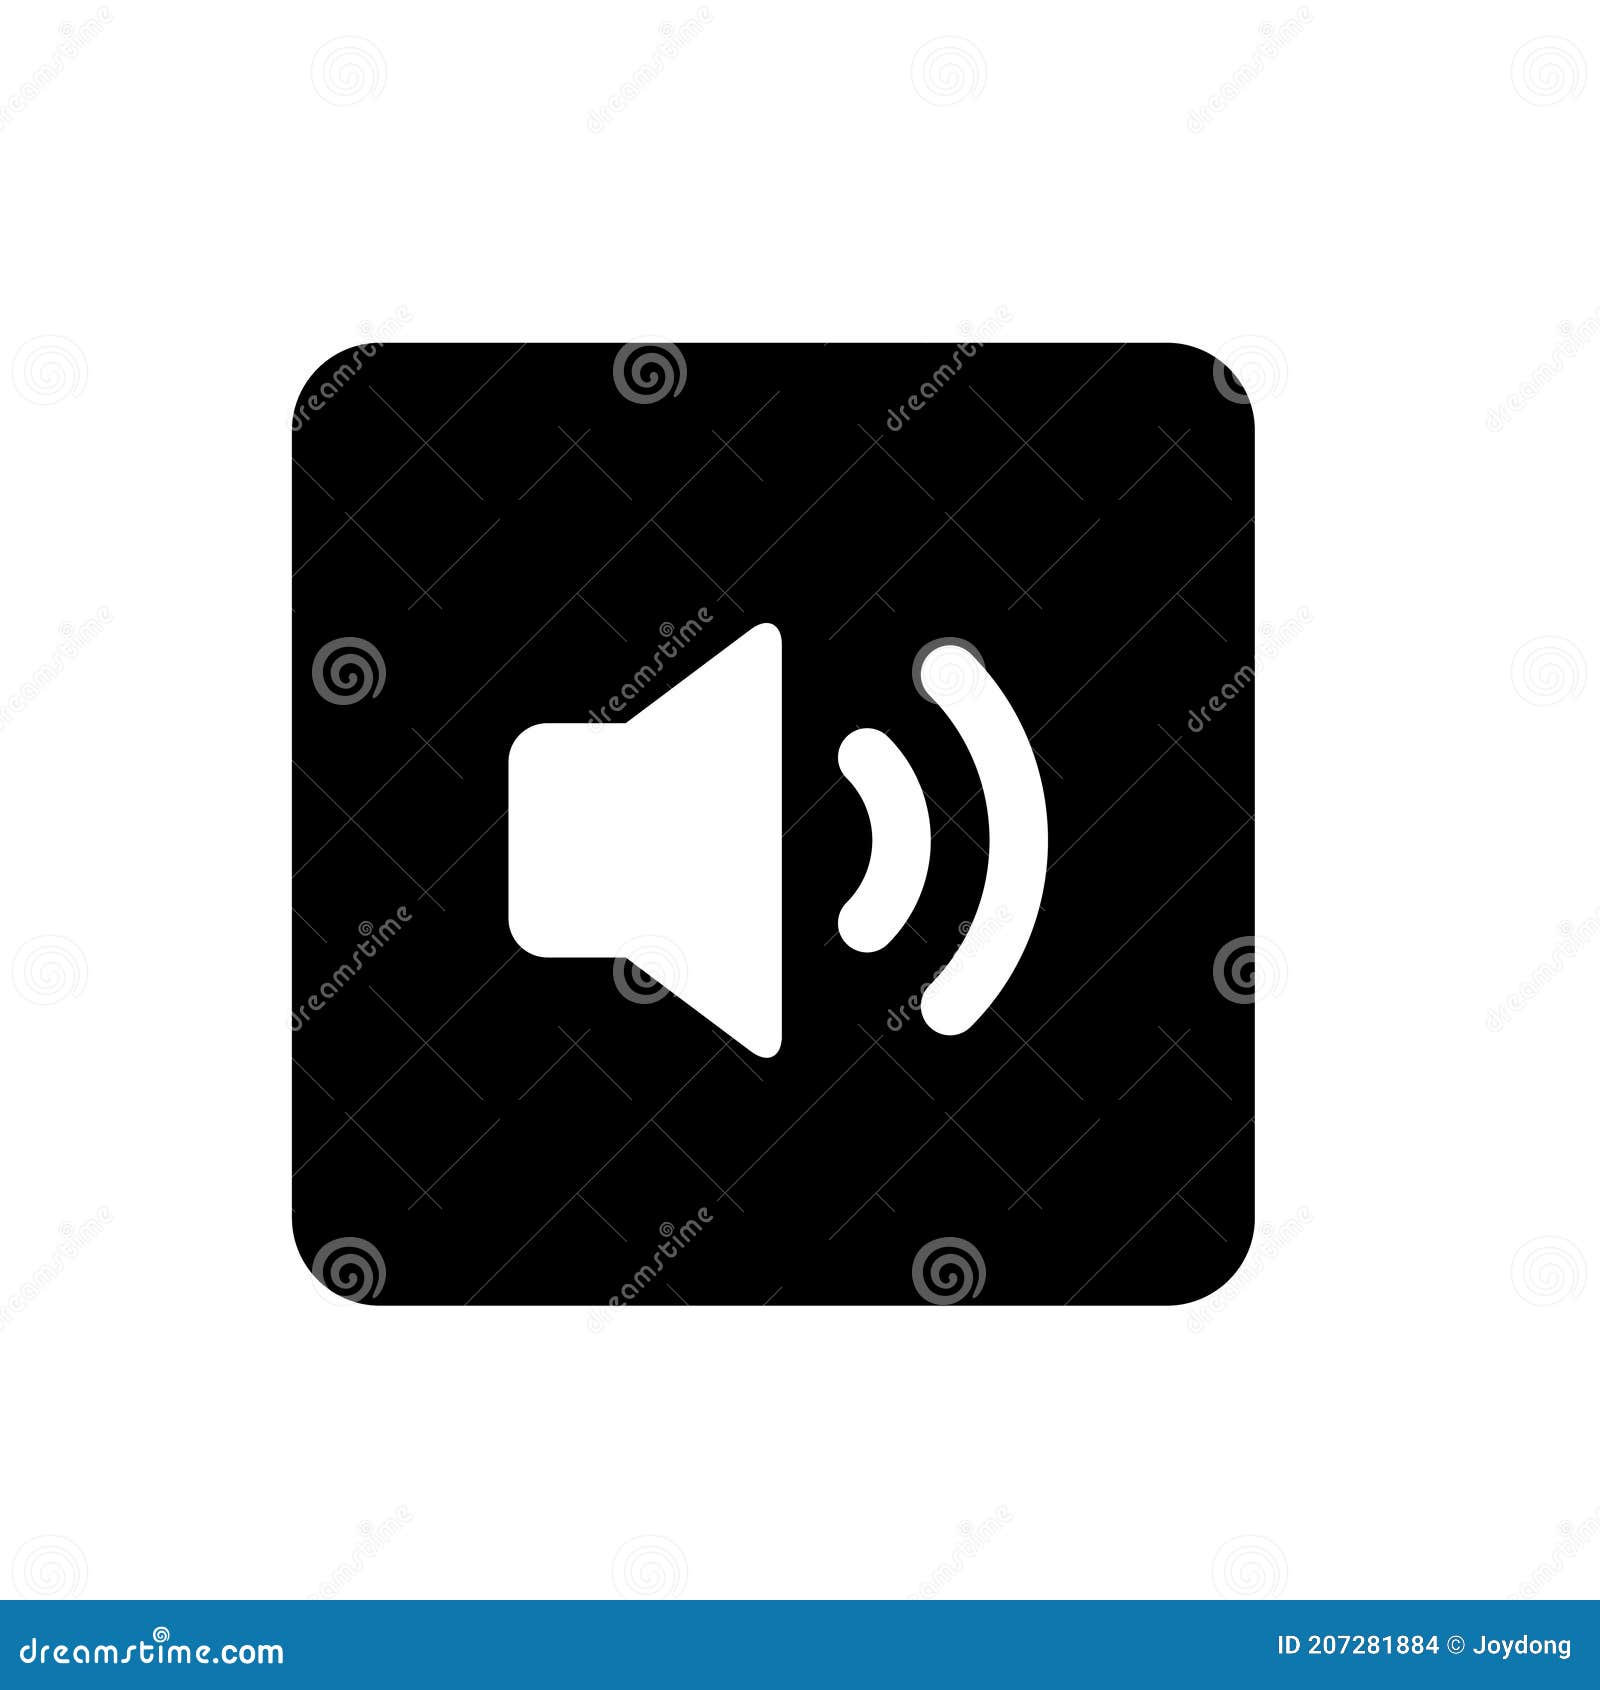  black sound file type icon set